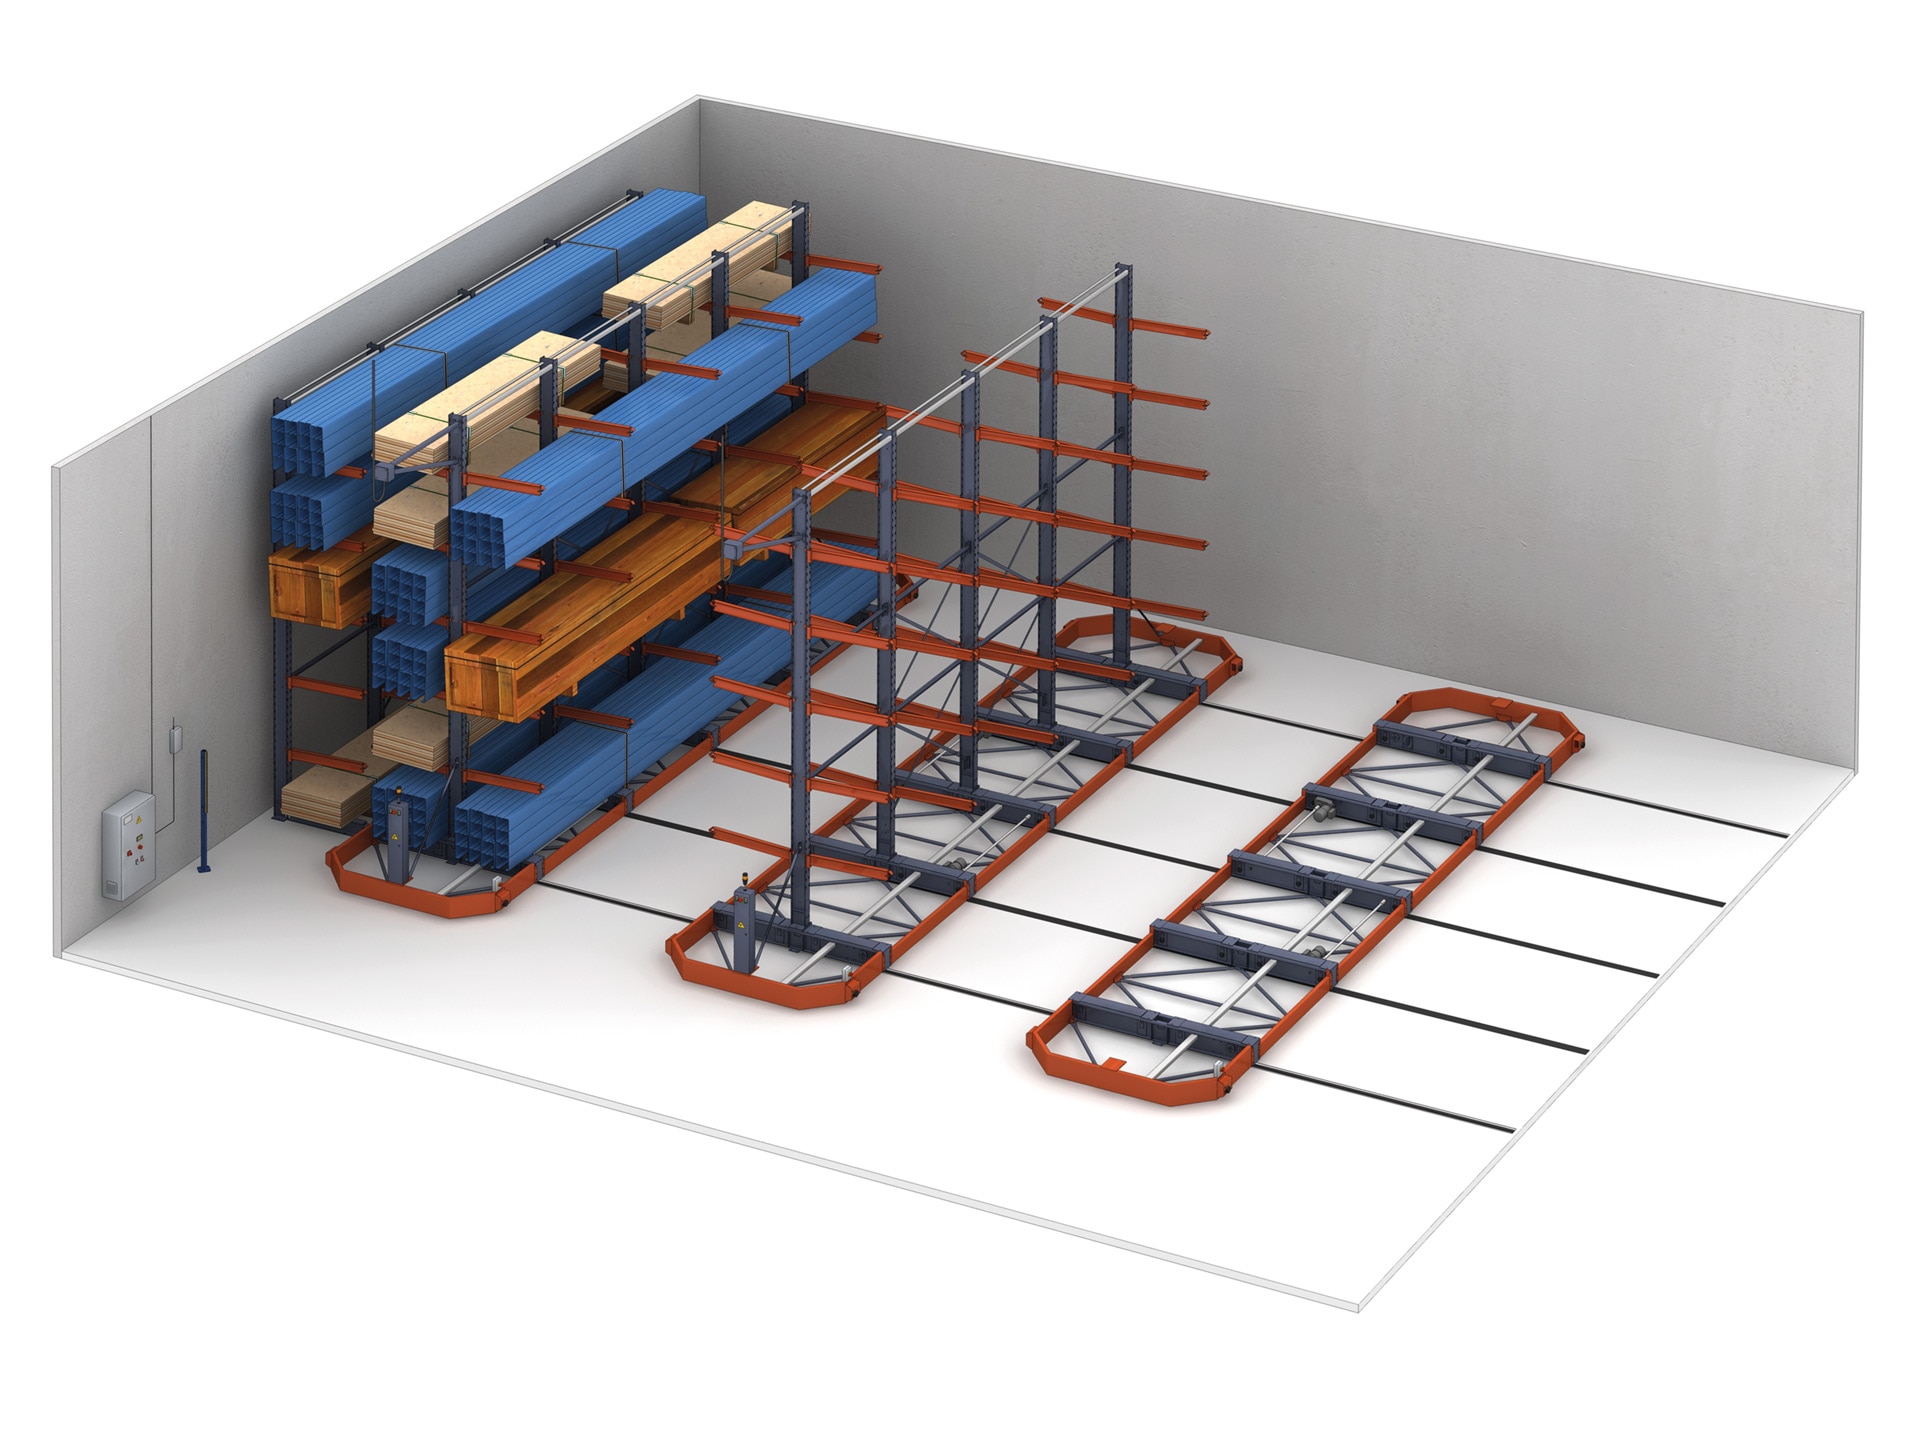 Podem ser instaladas onze estantes cantilever sobre bases móveis para armazenar cargas longas e volumosas